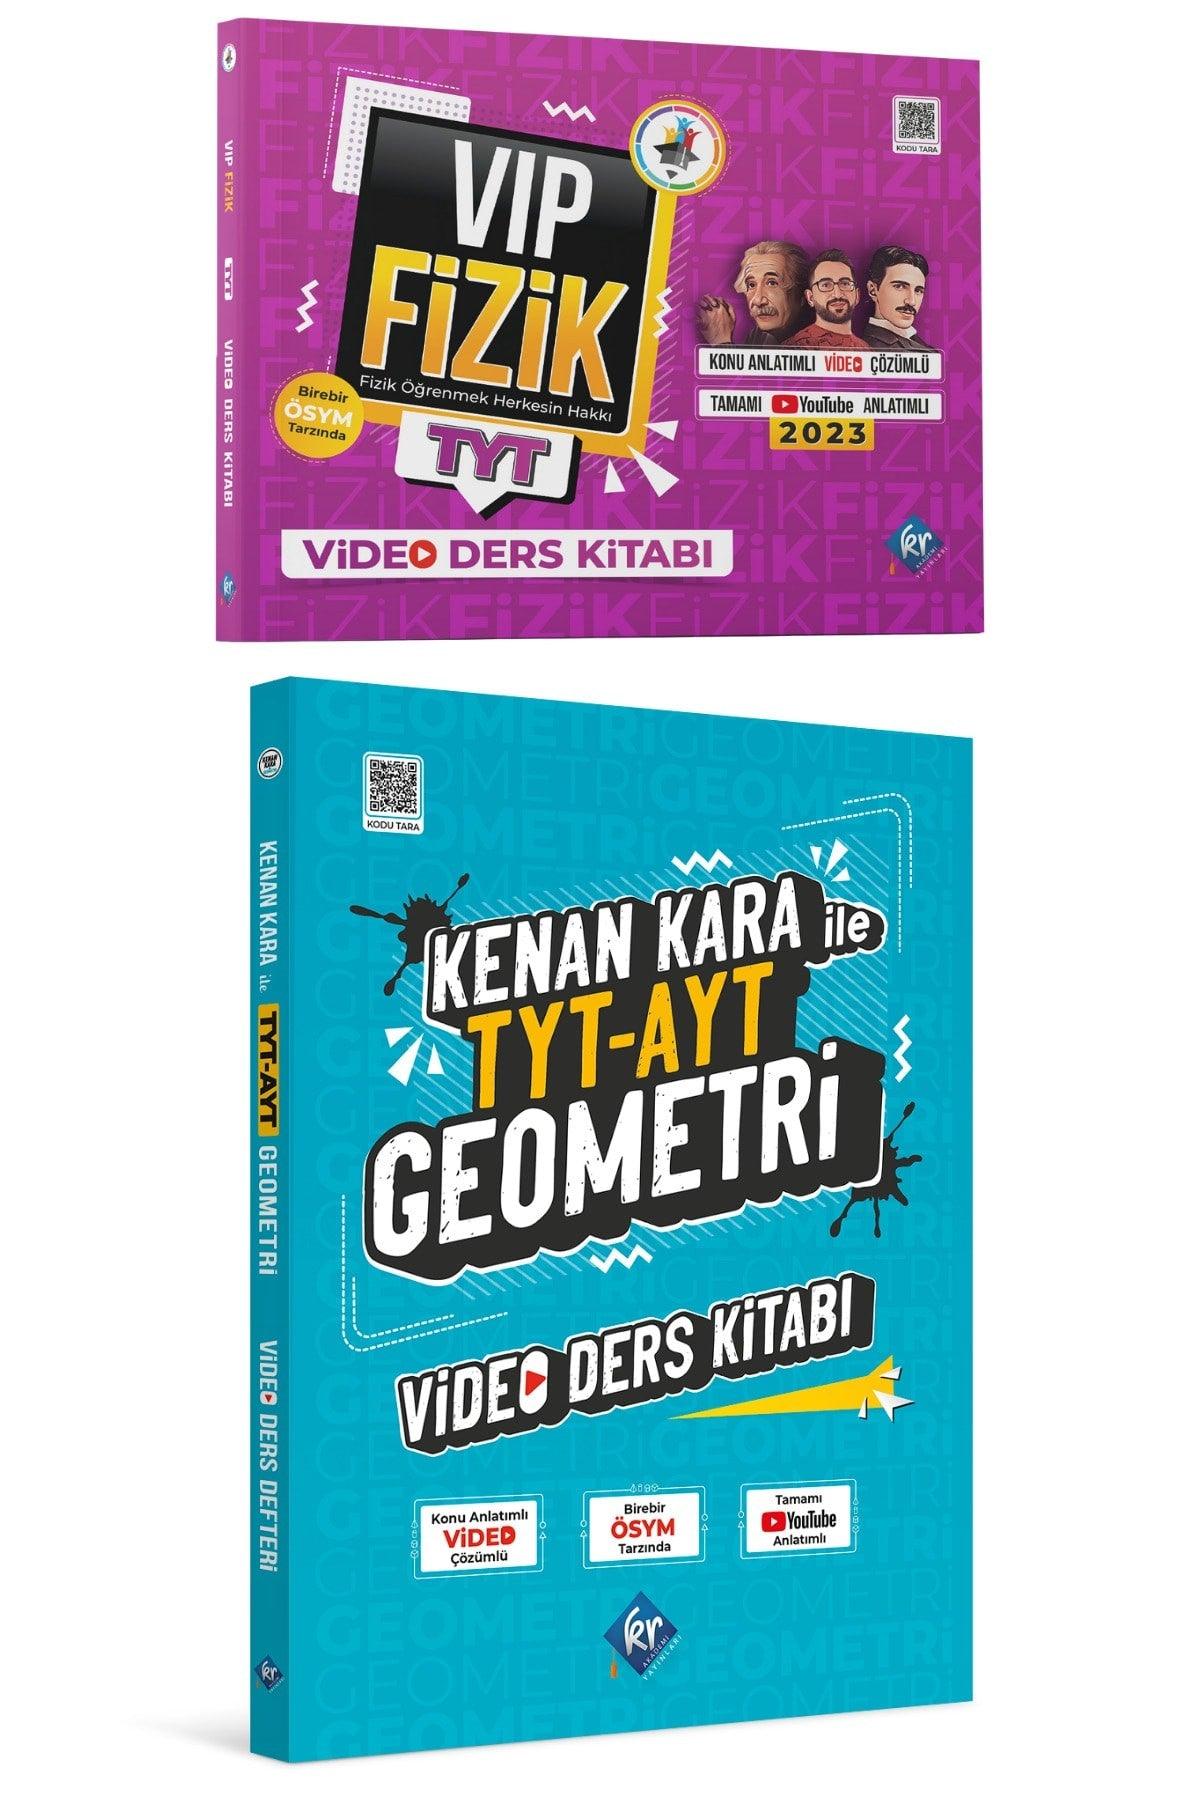 Vip Physics Tyt Video Textbook Eko And Kenan Kara Ile Tyt-ayt Geometry Video Textbook - Swordslife